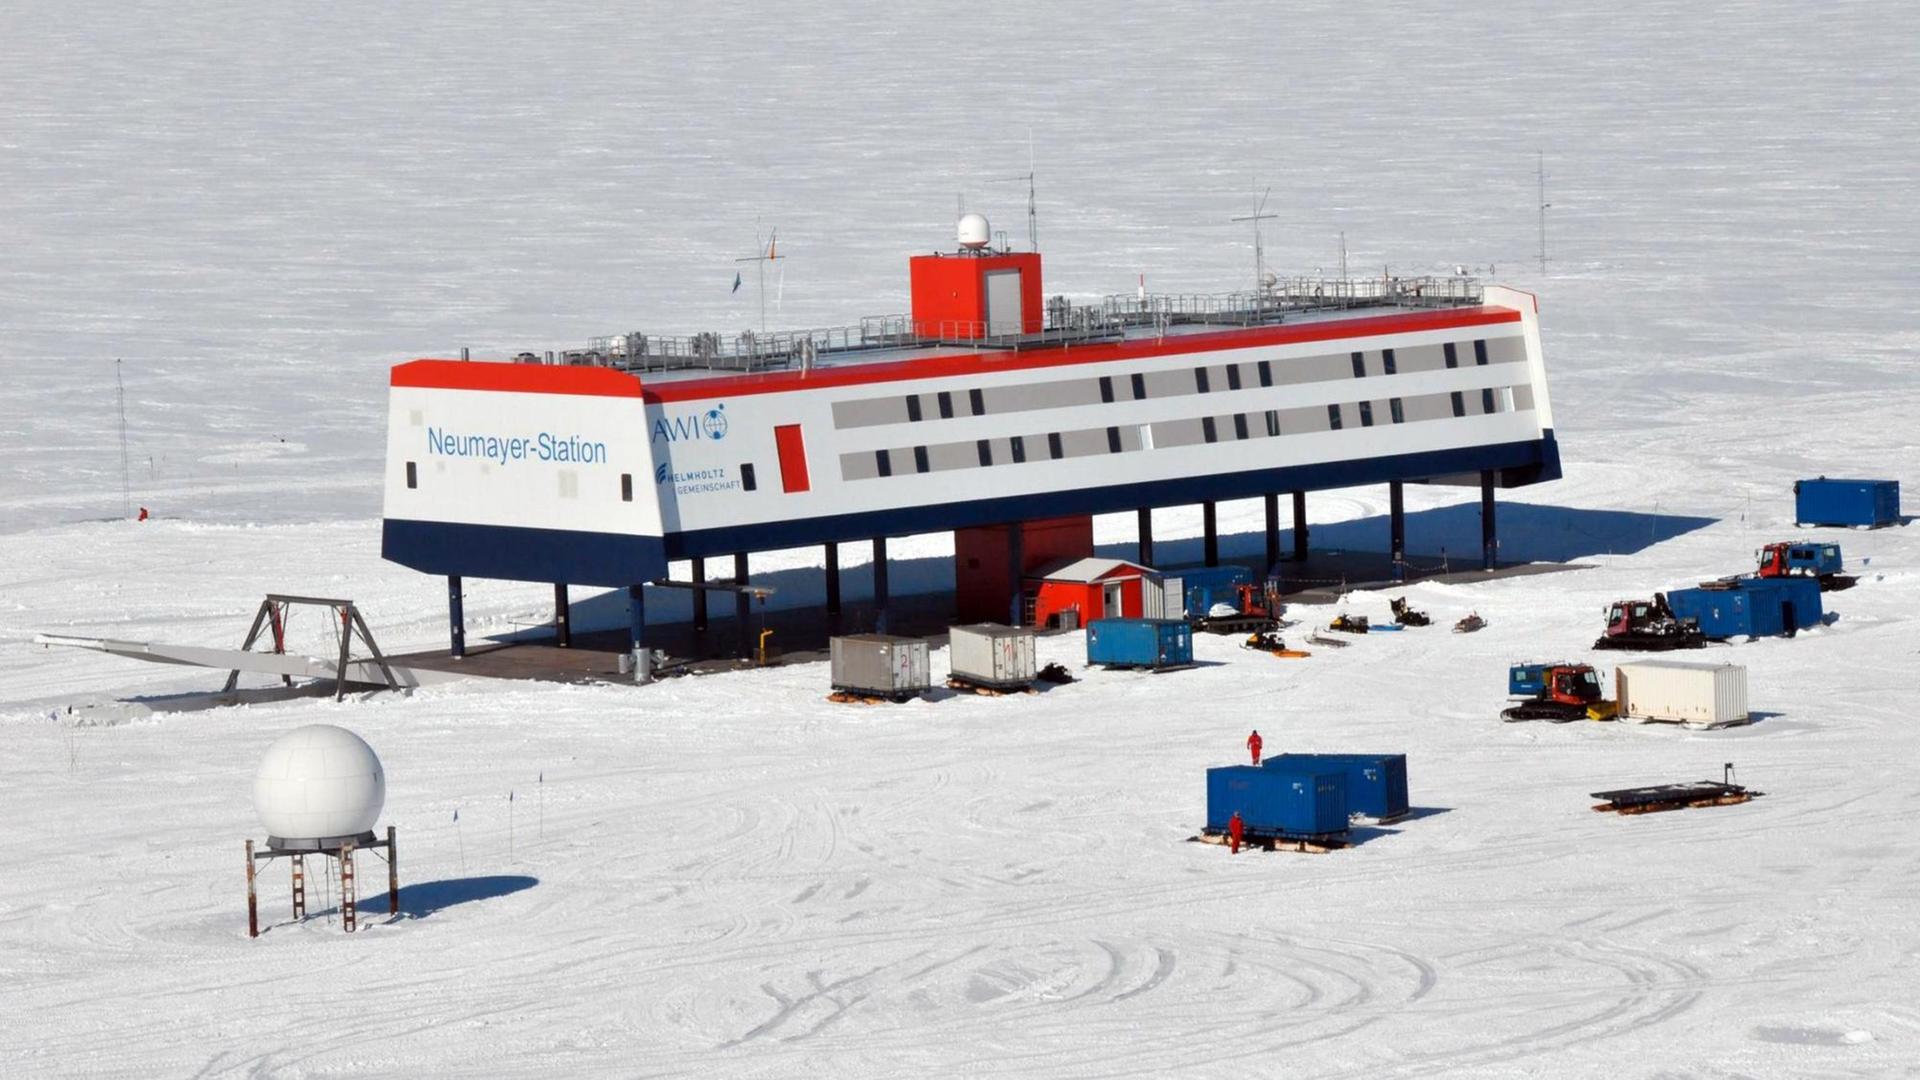 Die deutsche Forschungsbasis Neumayer-Station III in der Antarktis. Das hochmoderne Gebäude steht mit 16 Stelzen auf dem 200 Meter dicken Ekström-Schelfeis im Südpolargebiet.